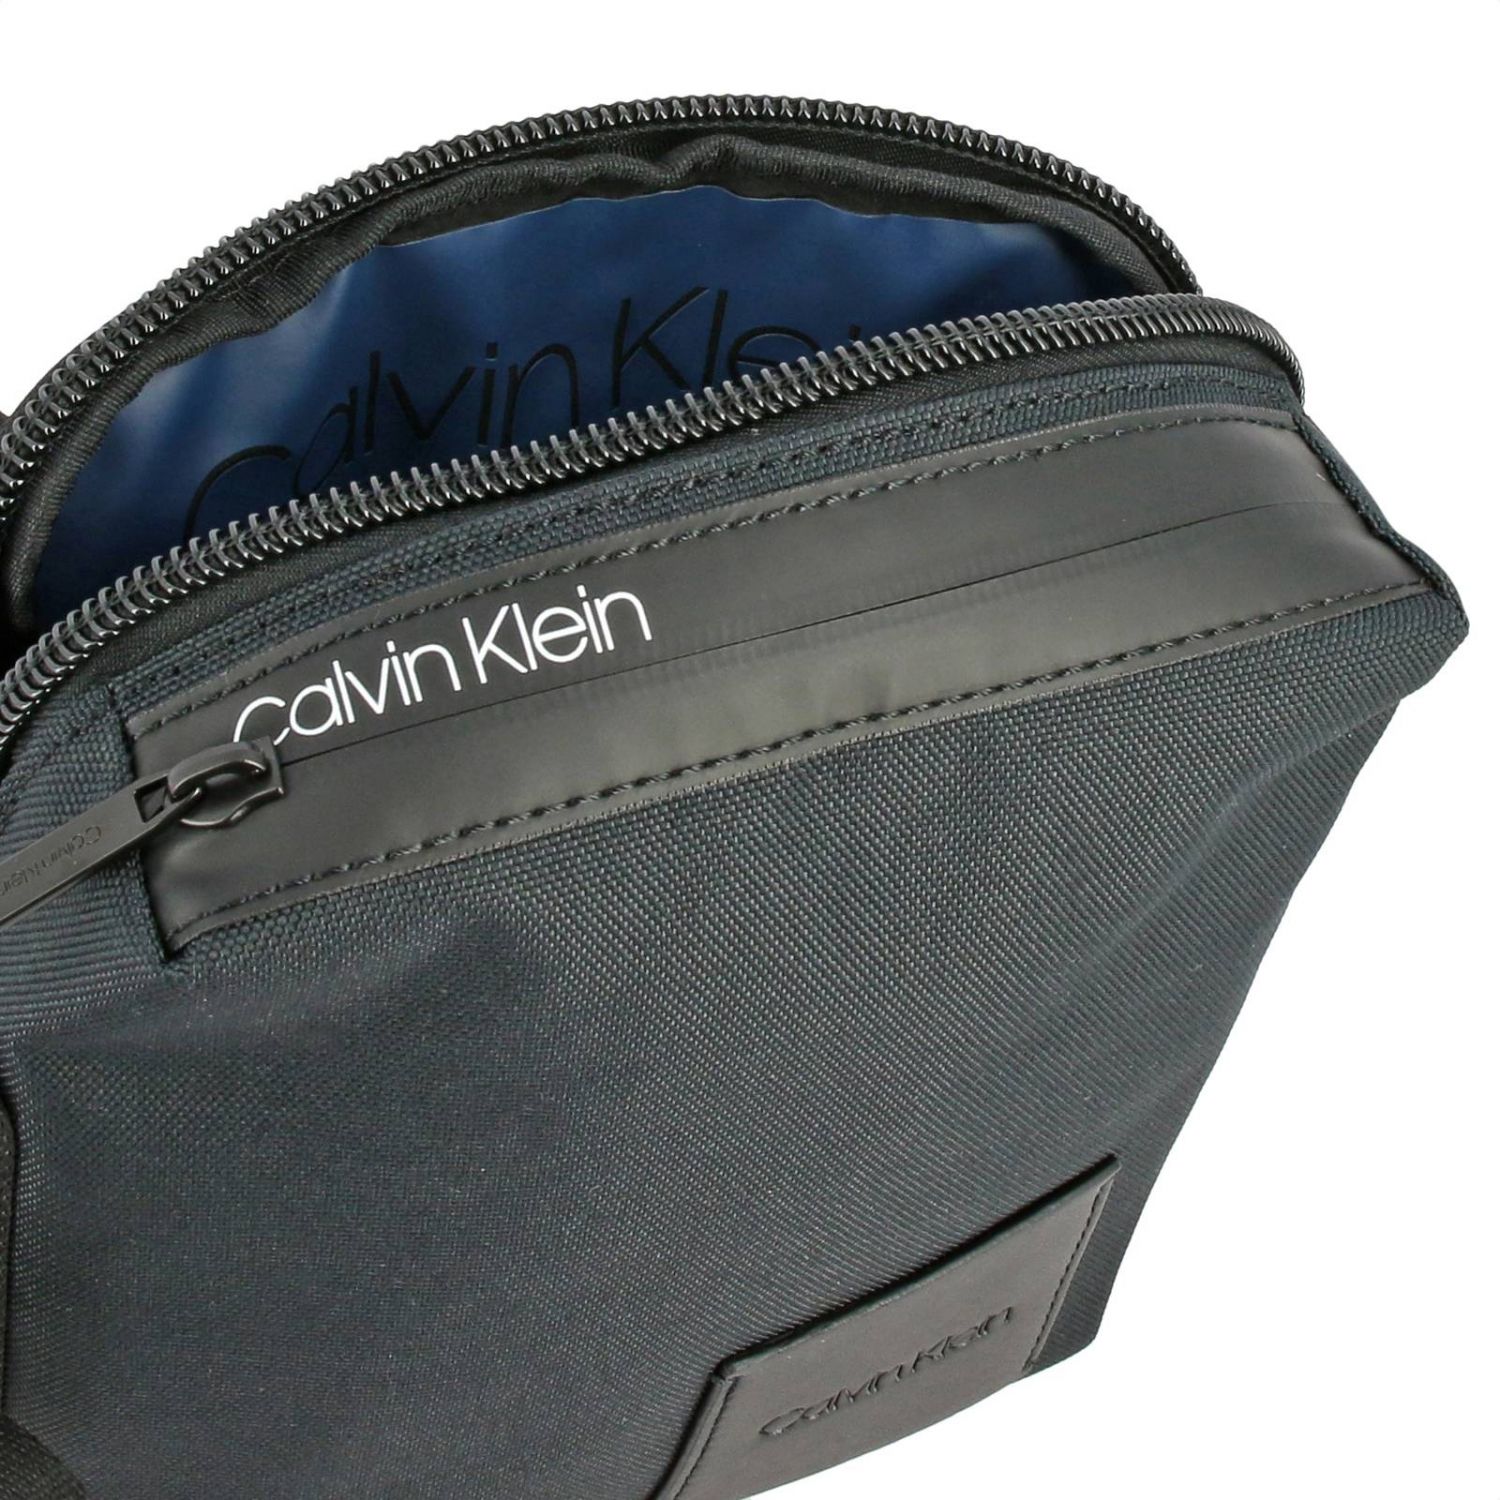 Calvin Klein Outlet: shoulder bag for men - Black | Calvin Klein ...